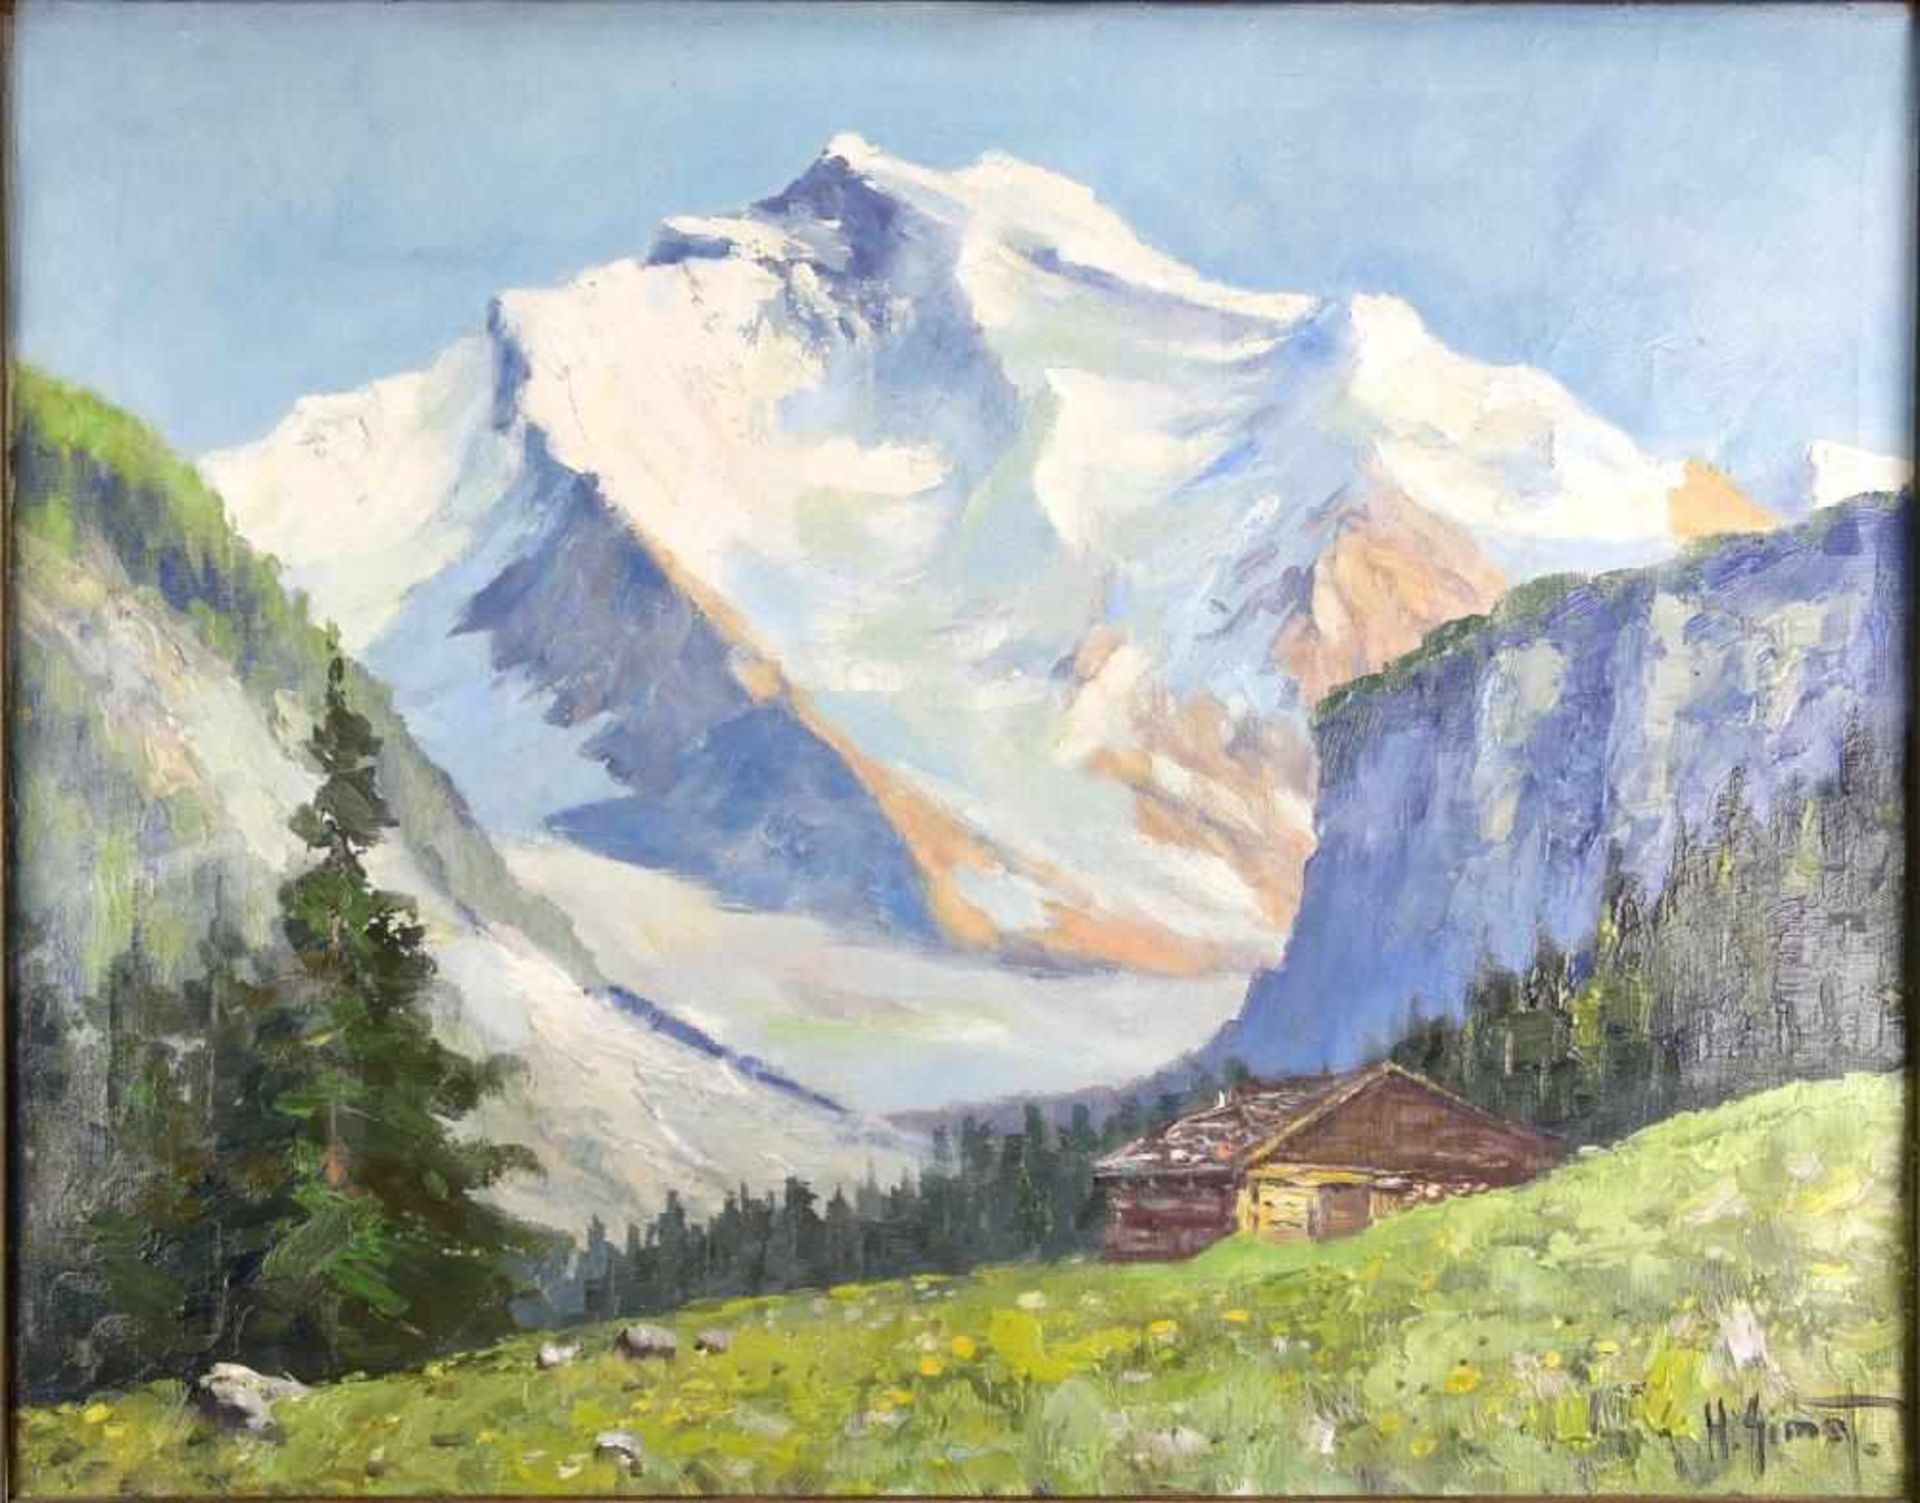 H. Simet. Landschafter 20. Jahrhundert. Jungfrau mit Grindelwald. Öl auf Leinwand. Unten rechts